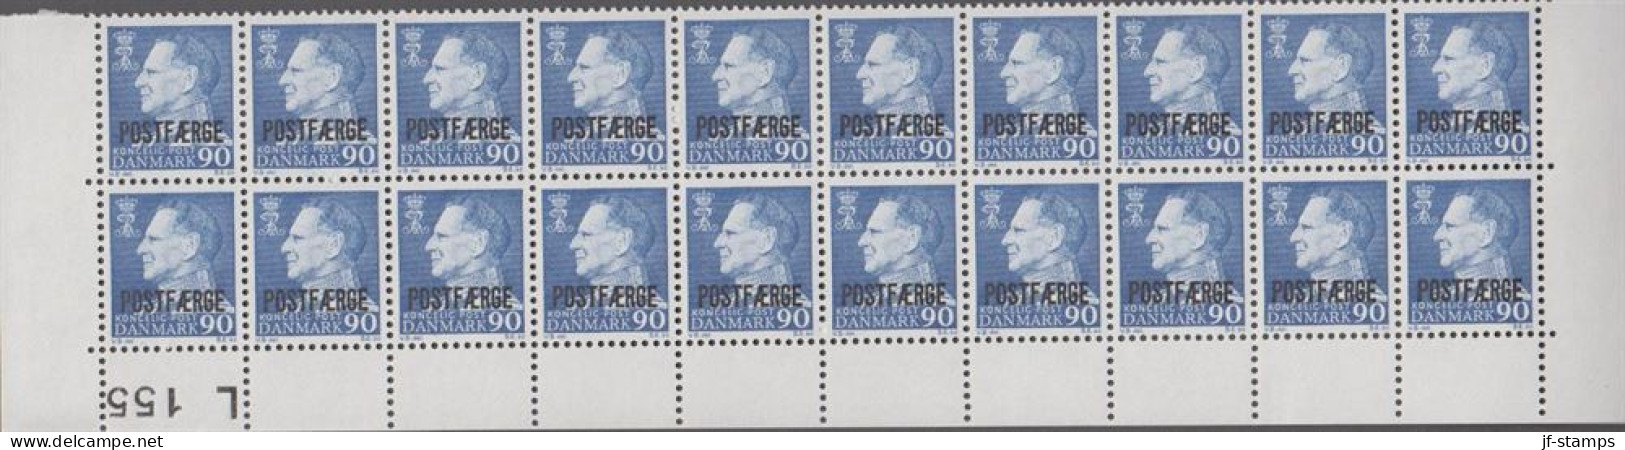 1970. Postfærge. 90 øre Frederik Overprinted POSTFÆRGE In 20-block With Lower Margin L 155. ... (Michel PF43) - JF538518 - Colis Postaux